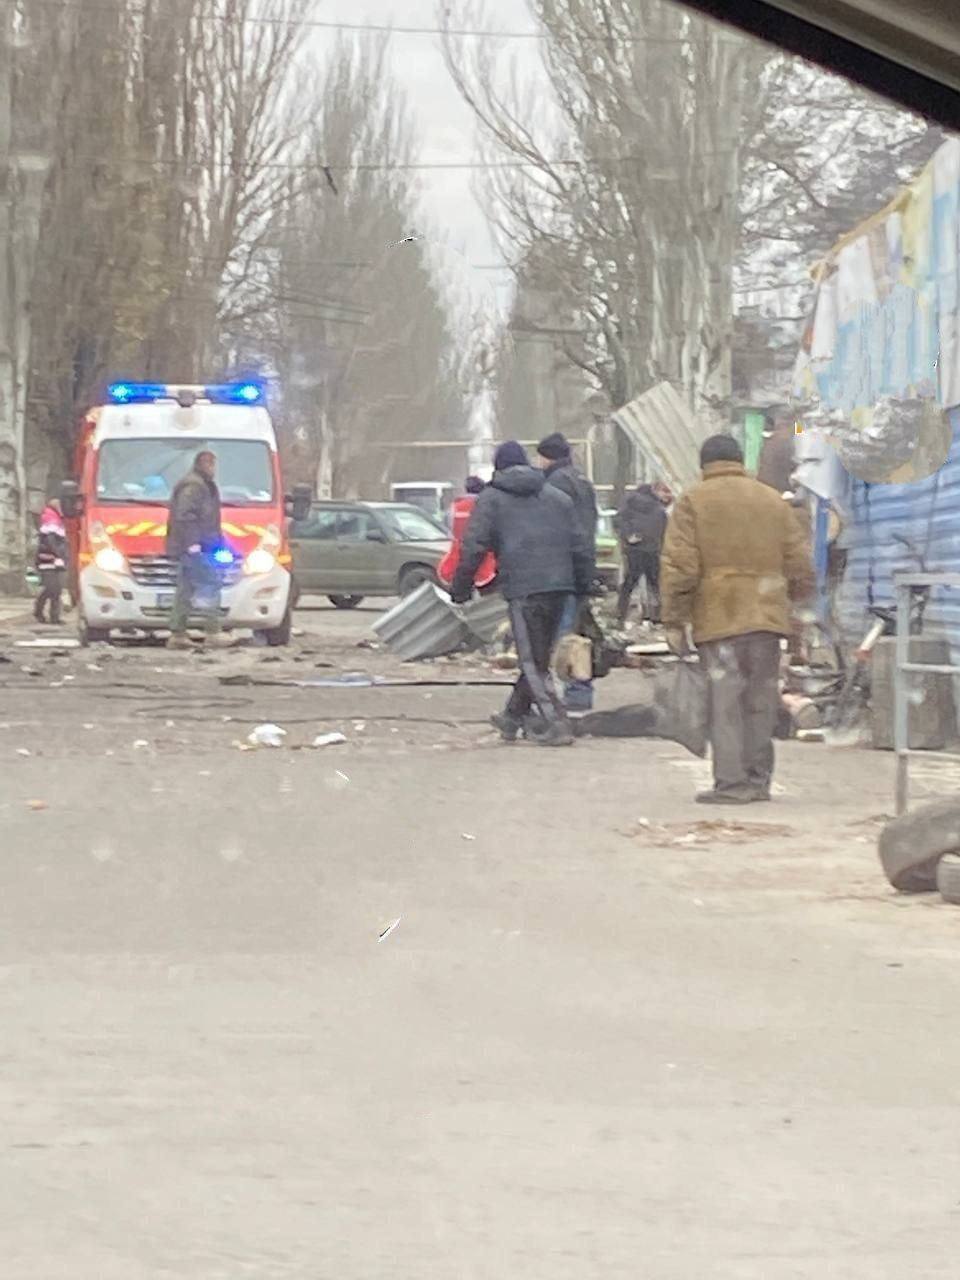 Враг обстрелял Курахово в Донецкой